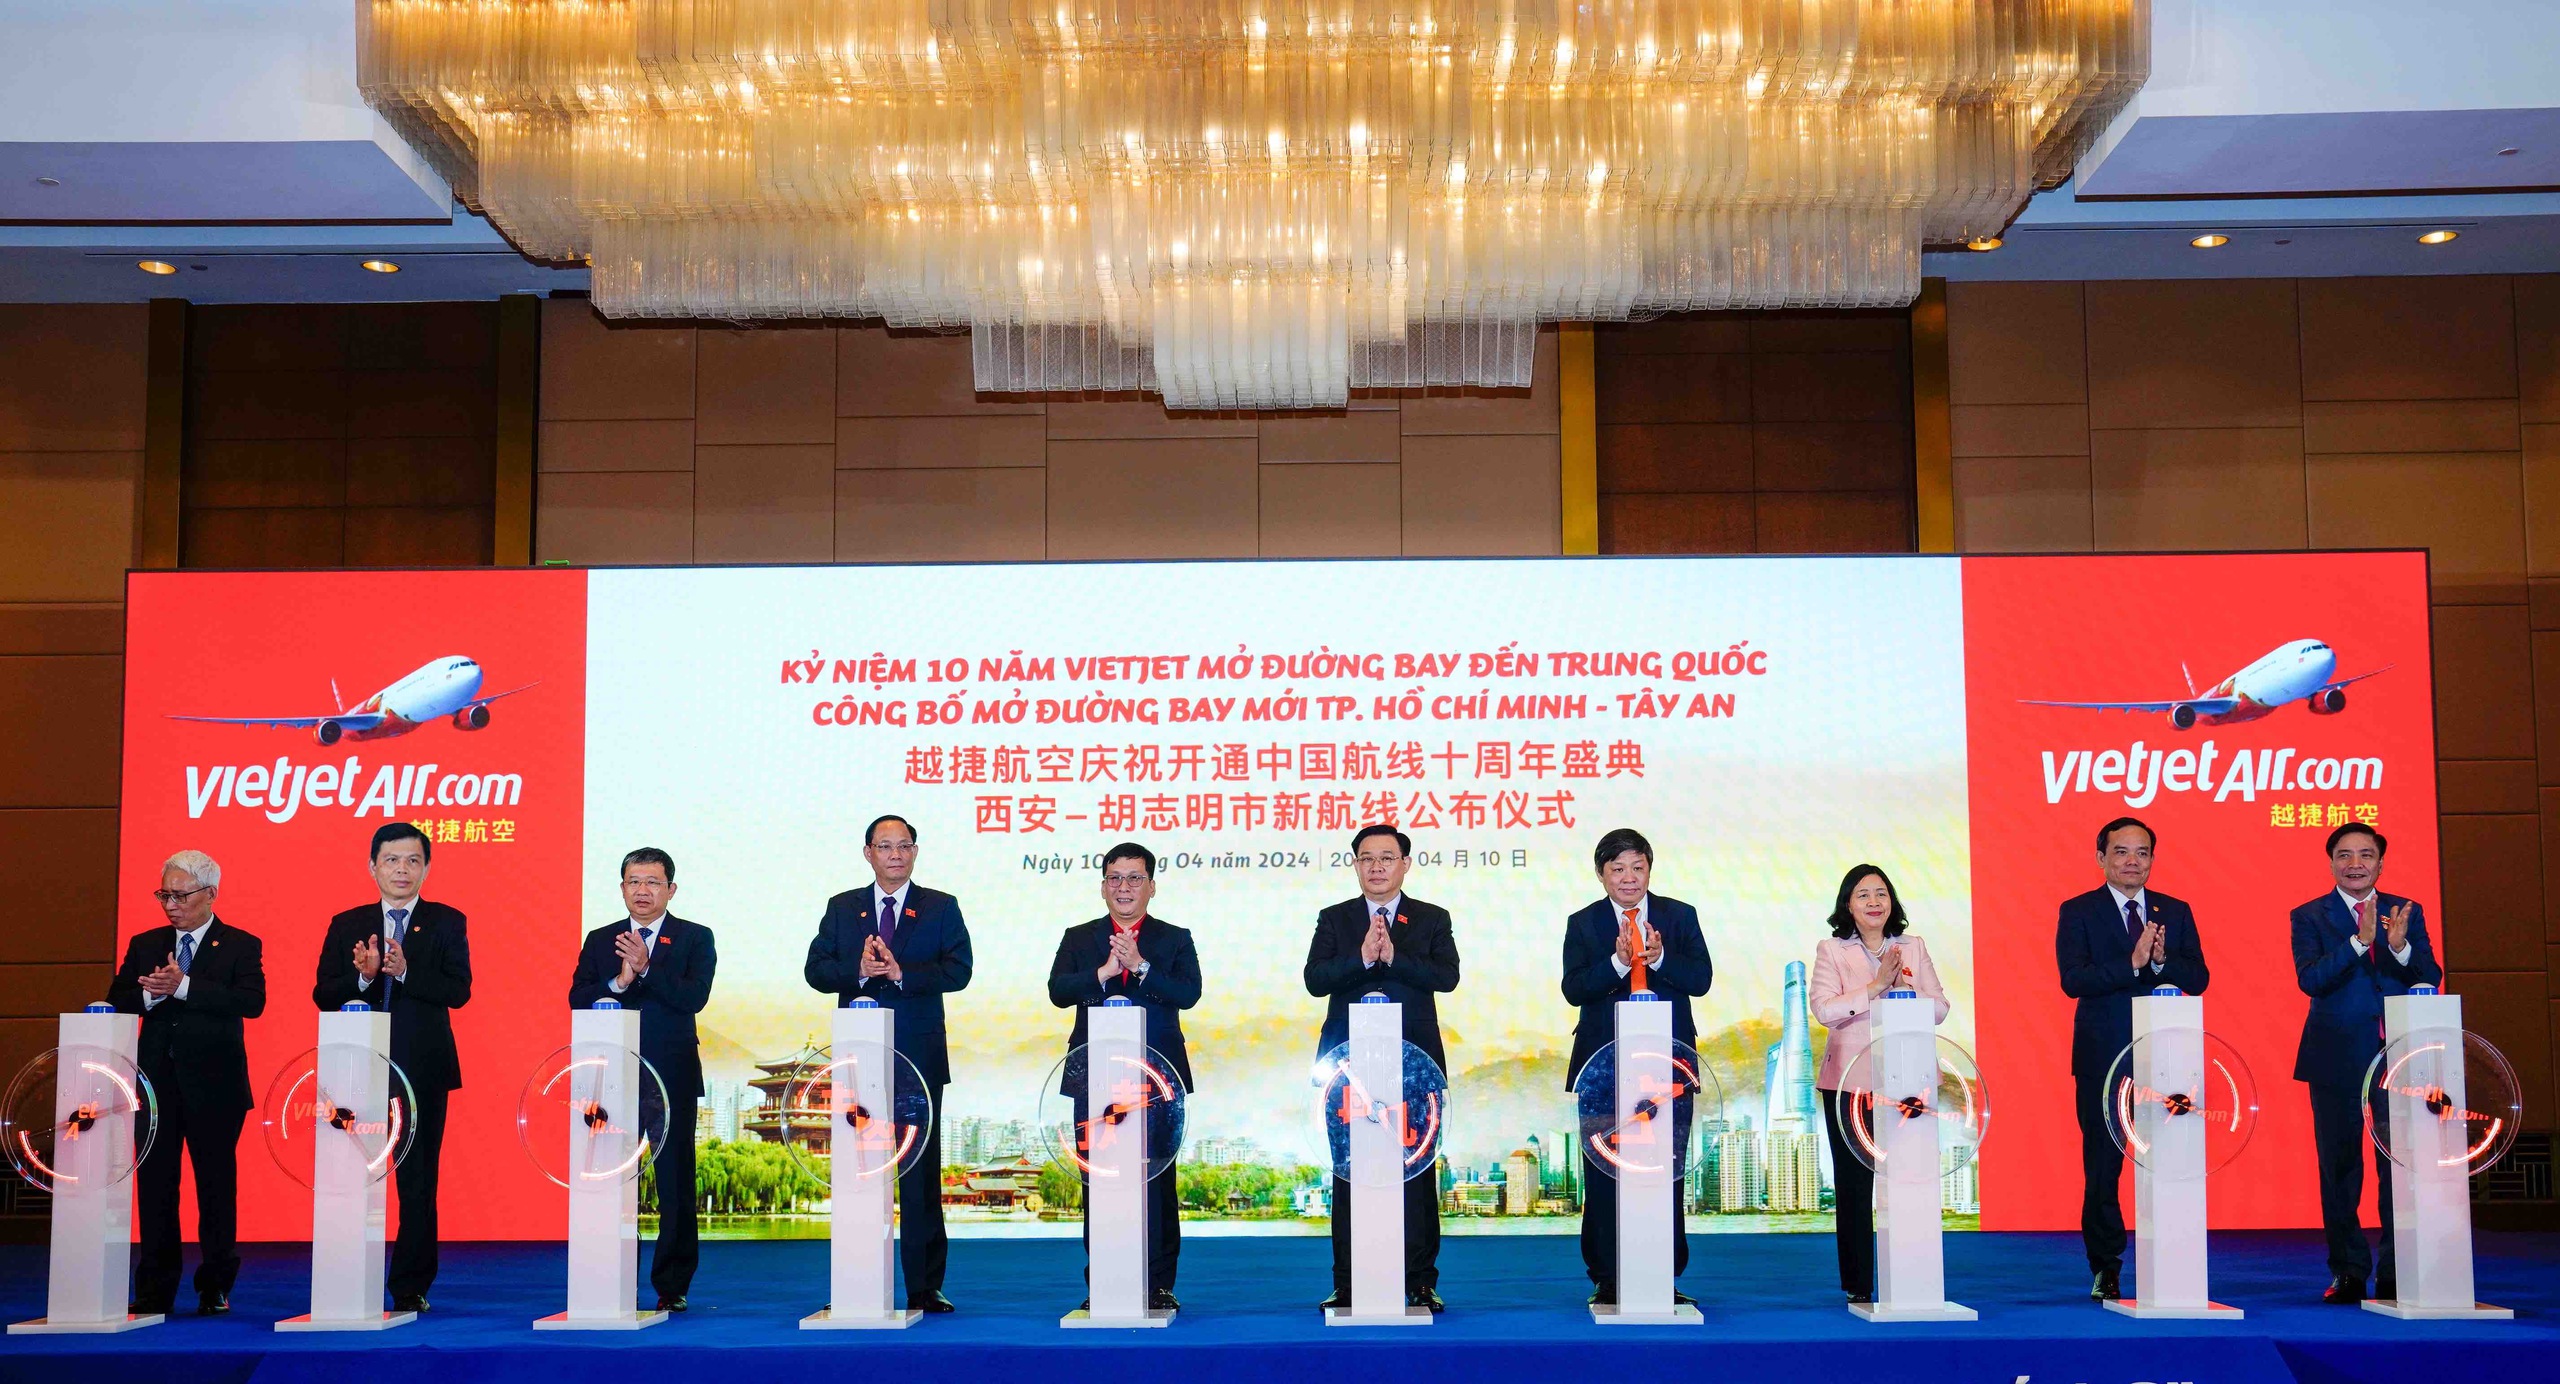 Nghi thức công bố đường bay mới TP. Hồ Chí Minh - Tây An (Trung Quốc) của Vietjet.